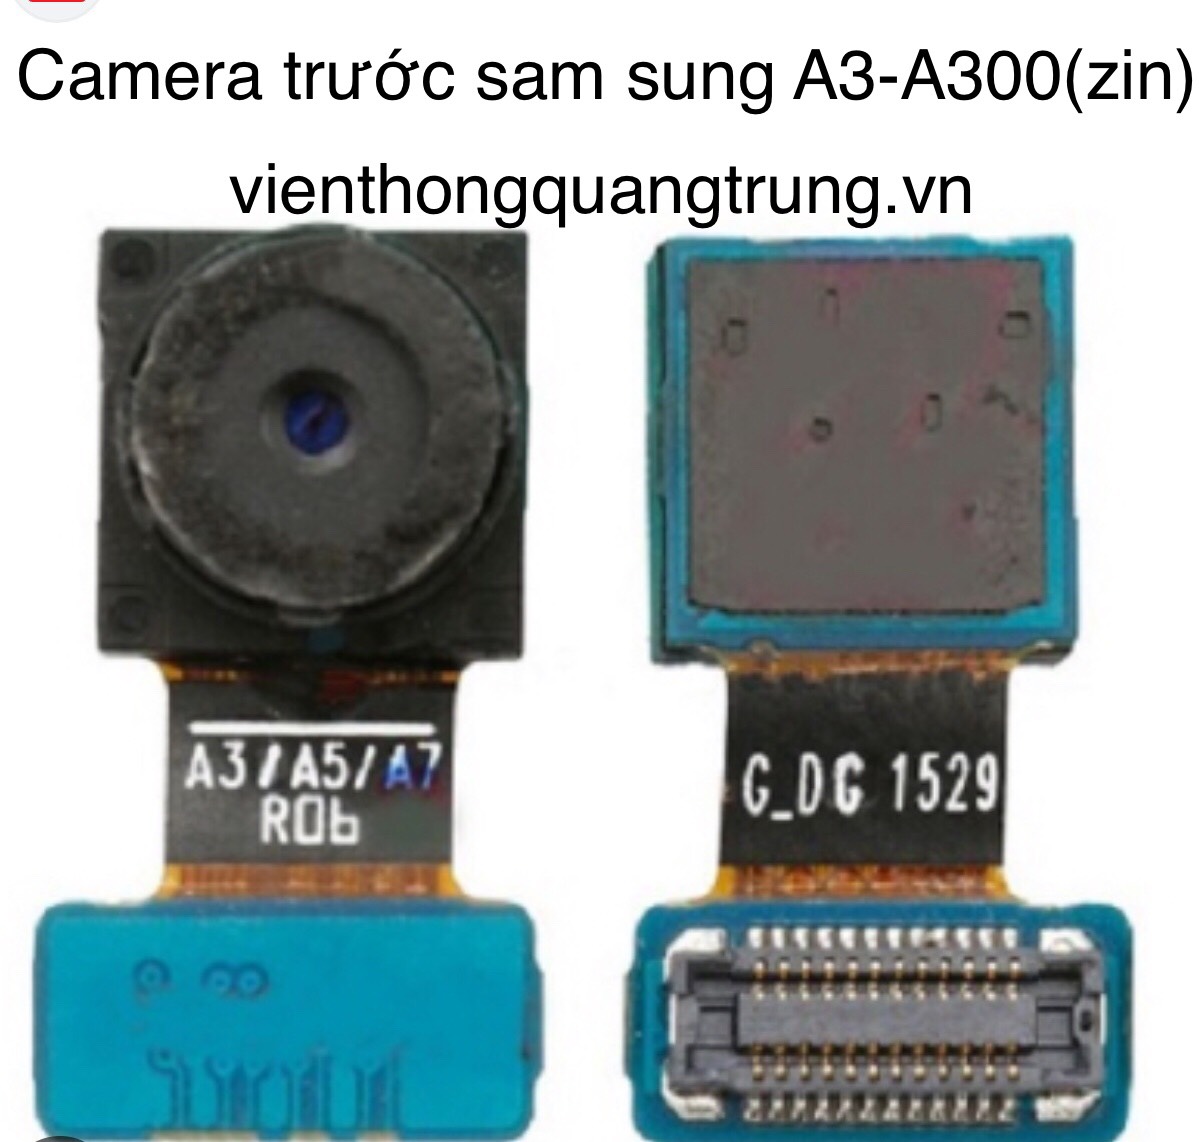 Camera trước Samsung A3 (zin tháo máy)